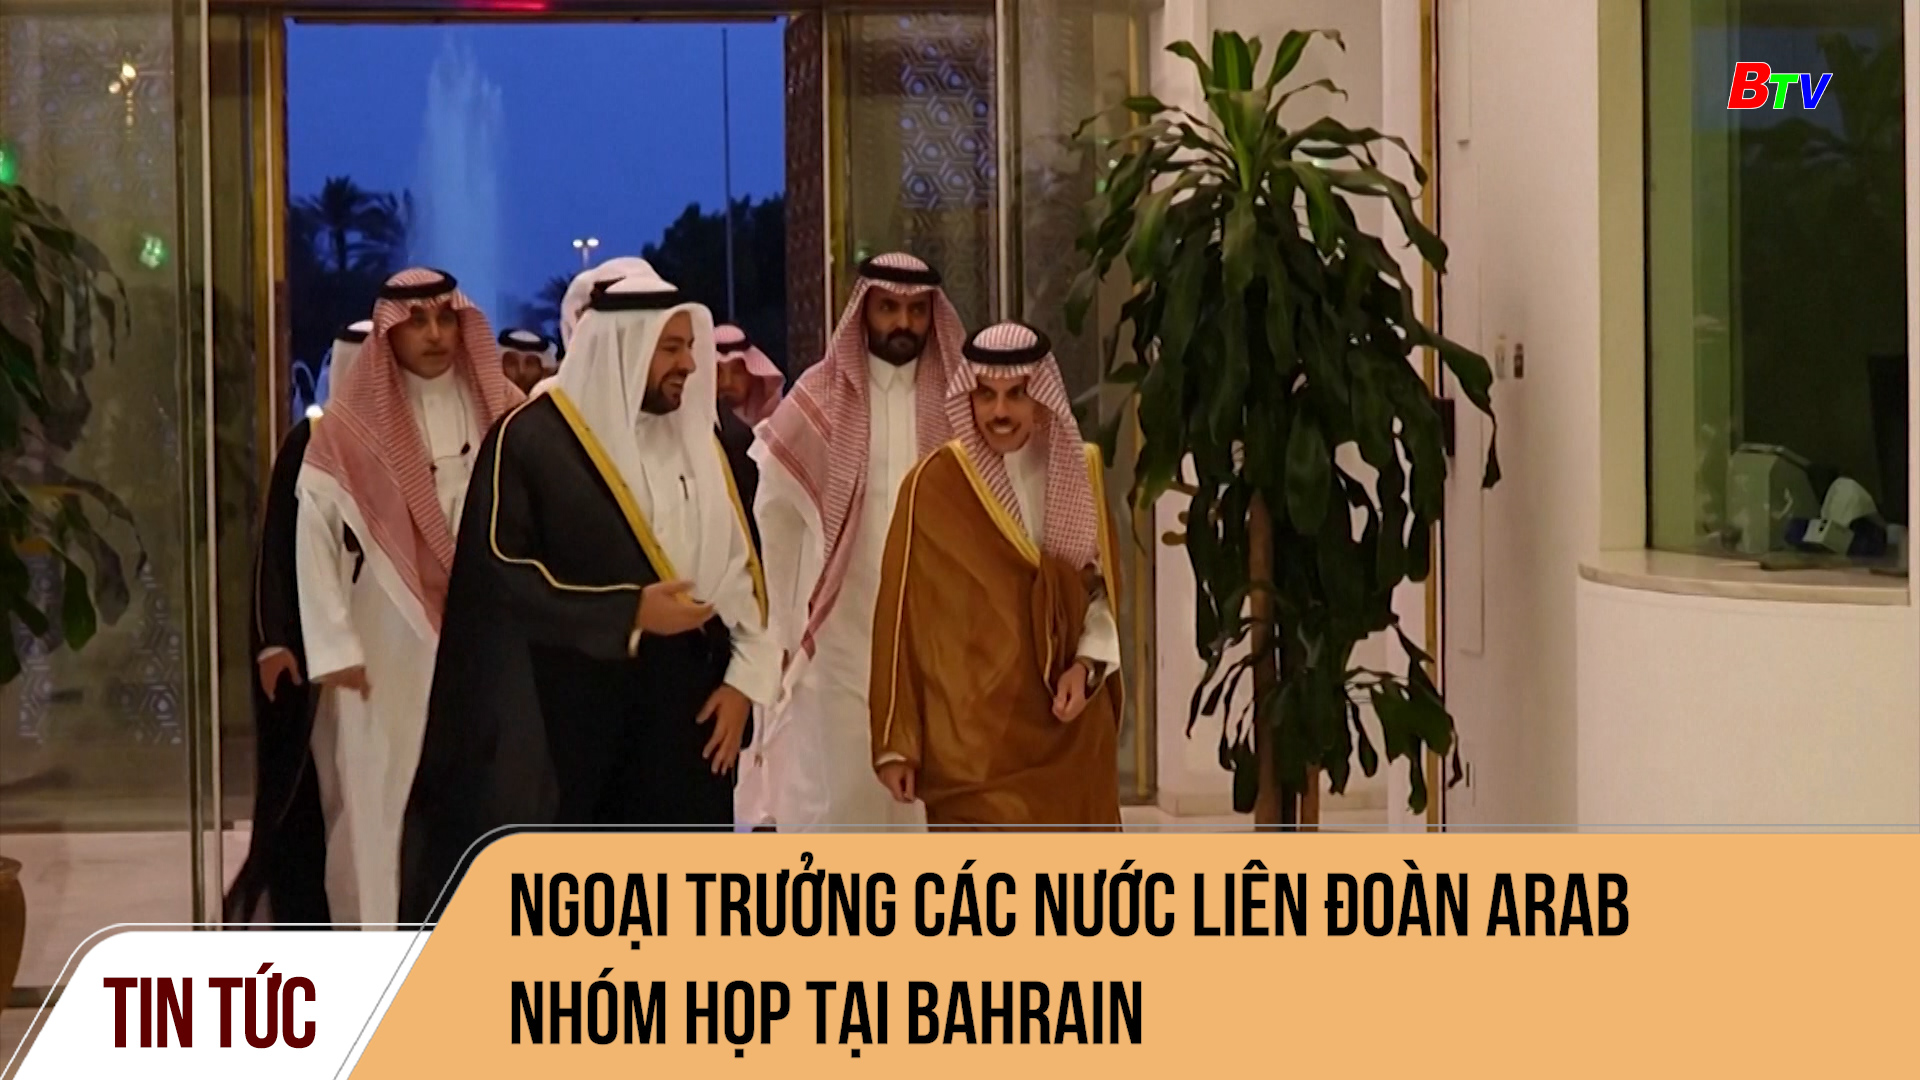 Ngoại trưởng các nước Liên đoàn Arab nhóm họp tại Bahrain